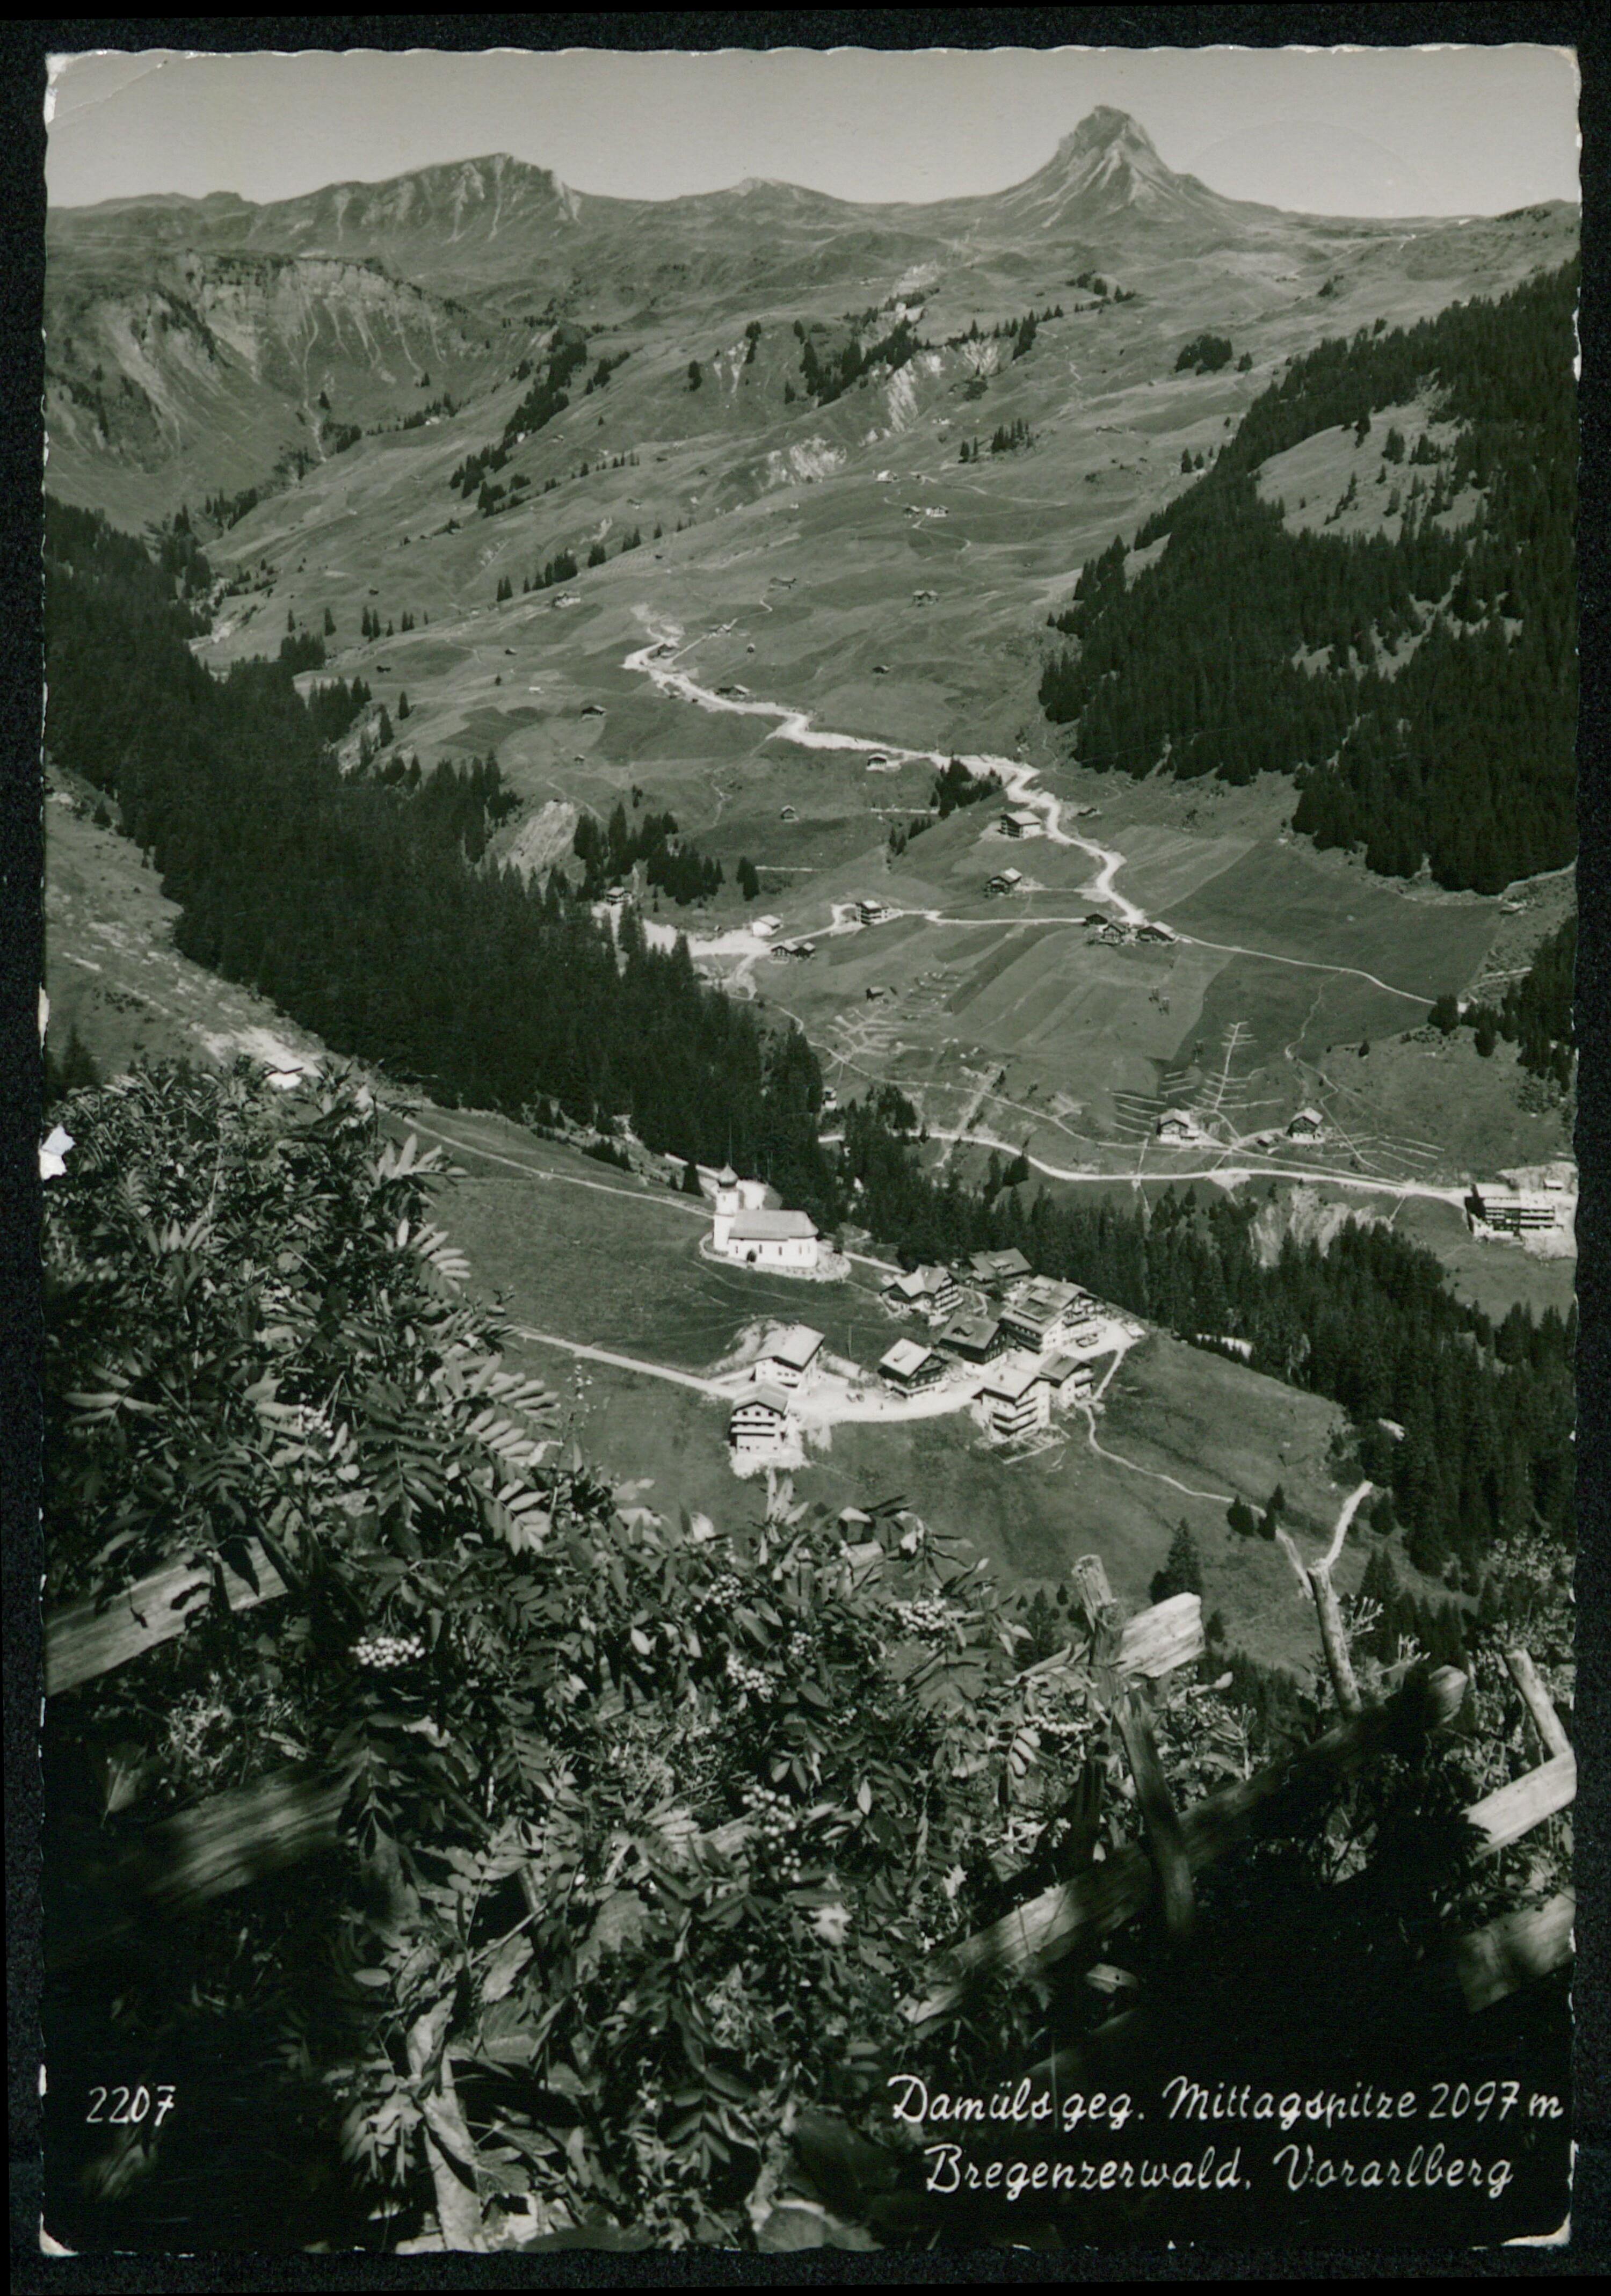 Damüls geg. Mittagspitze 2097 m Bregenzerwald, Vorarlberg></div>


    <hr>
    <div class=